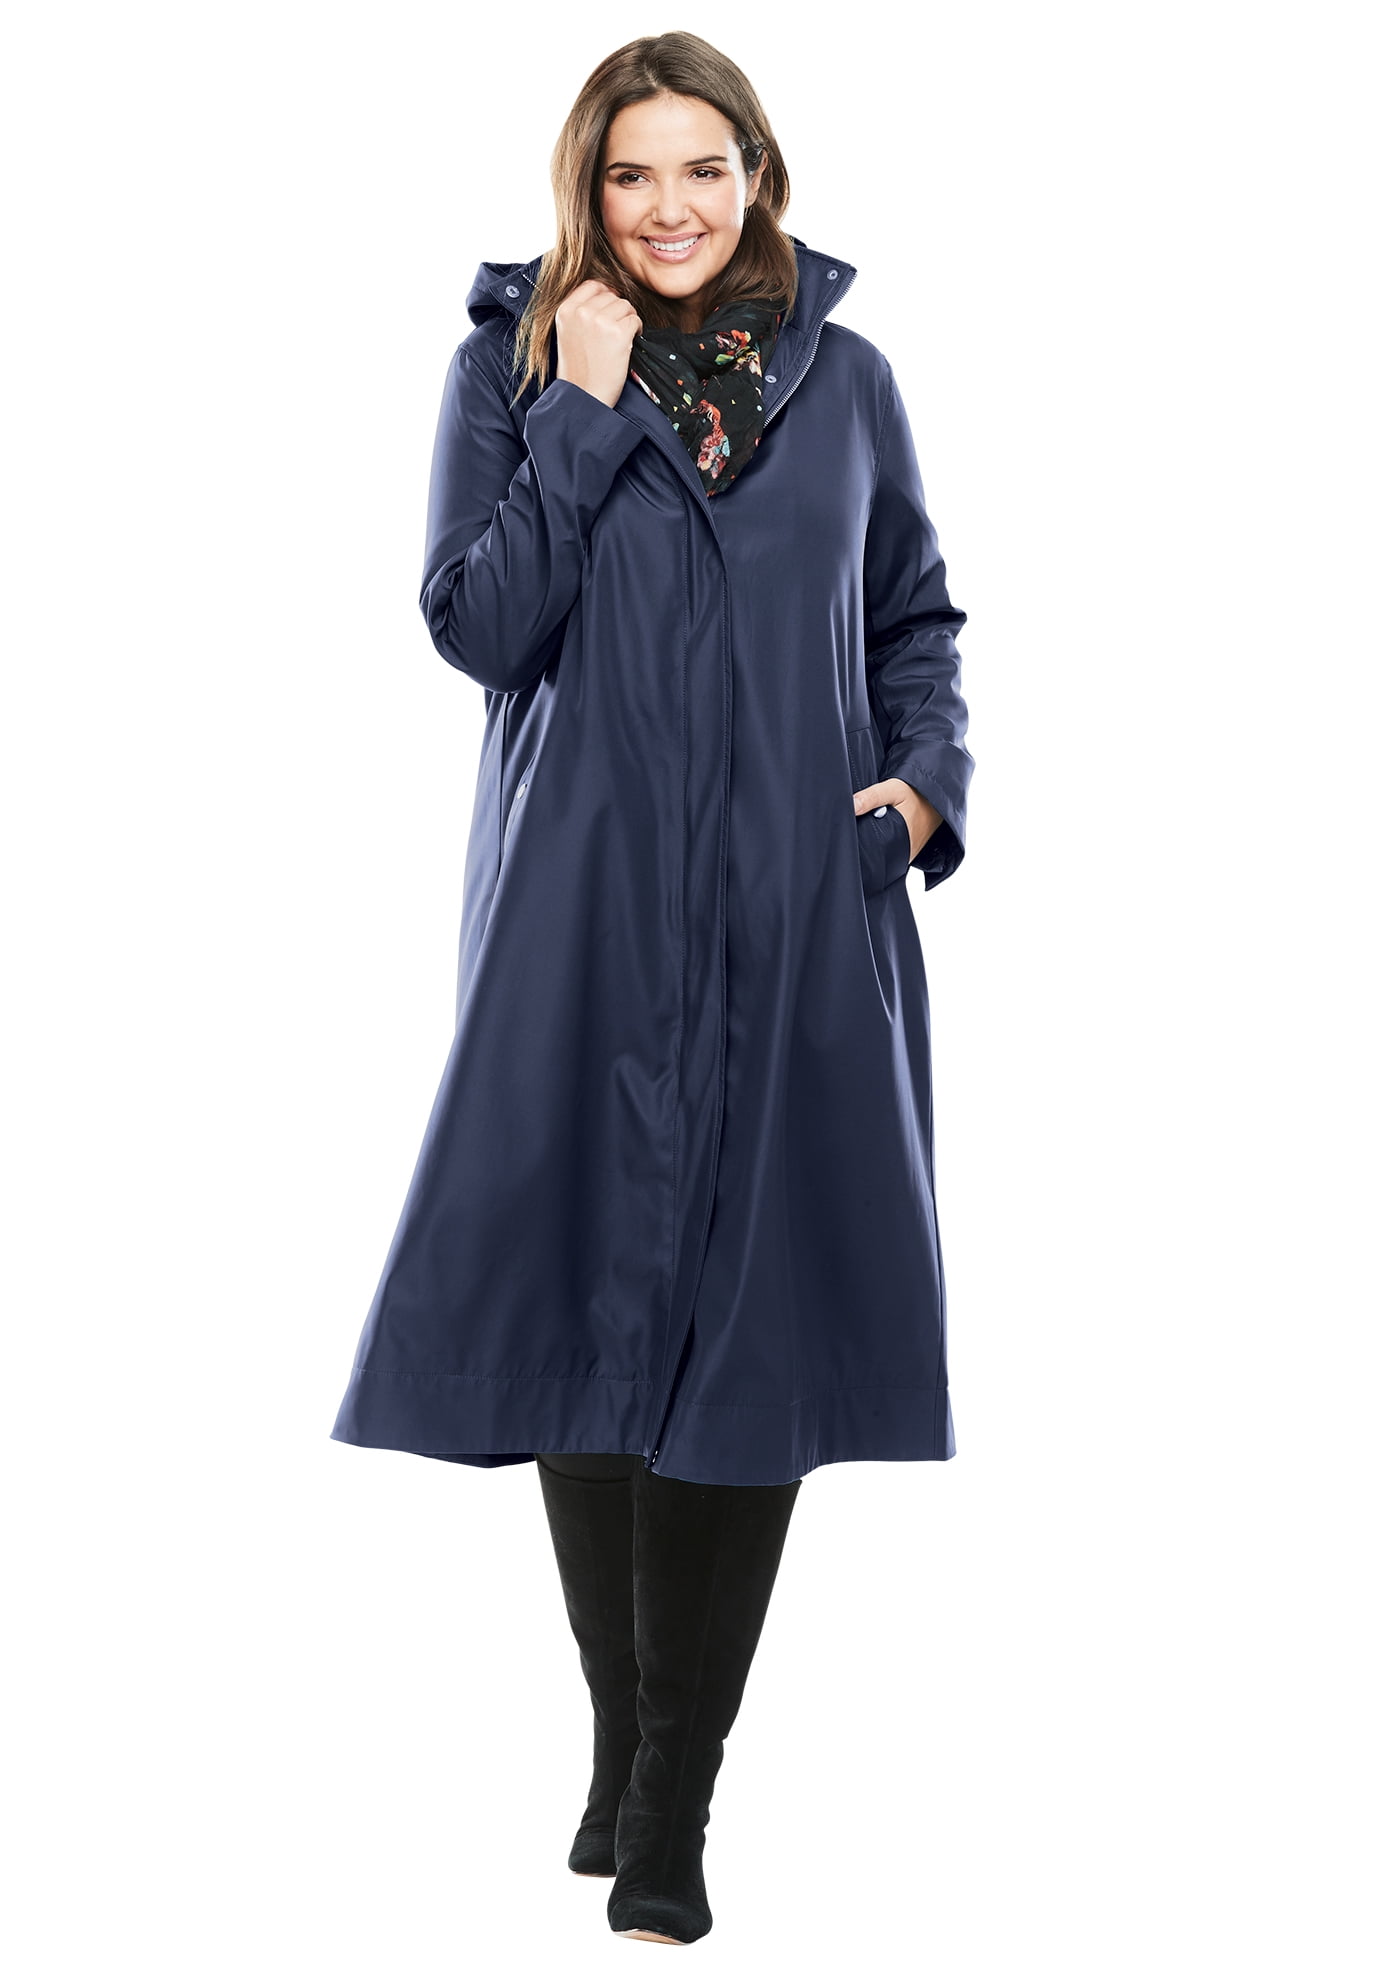 Women Light Weight Hooded Long Waxed Rain Mac Coat Waterproof Cape Jacket plus